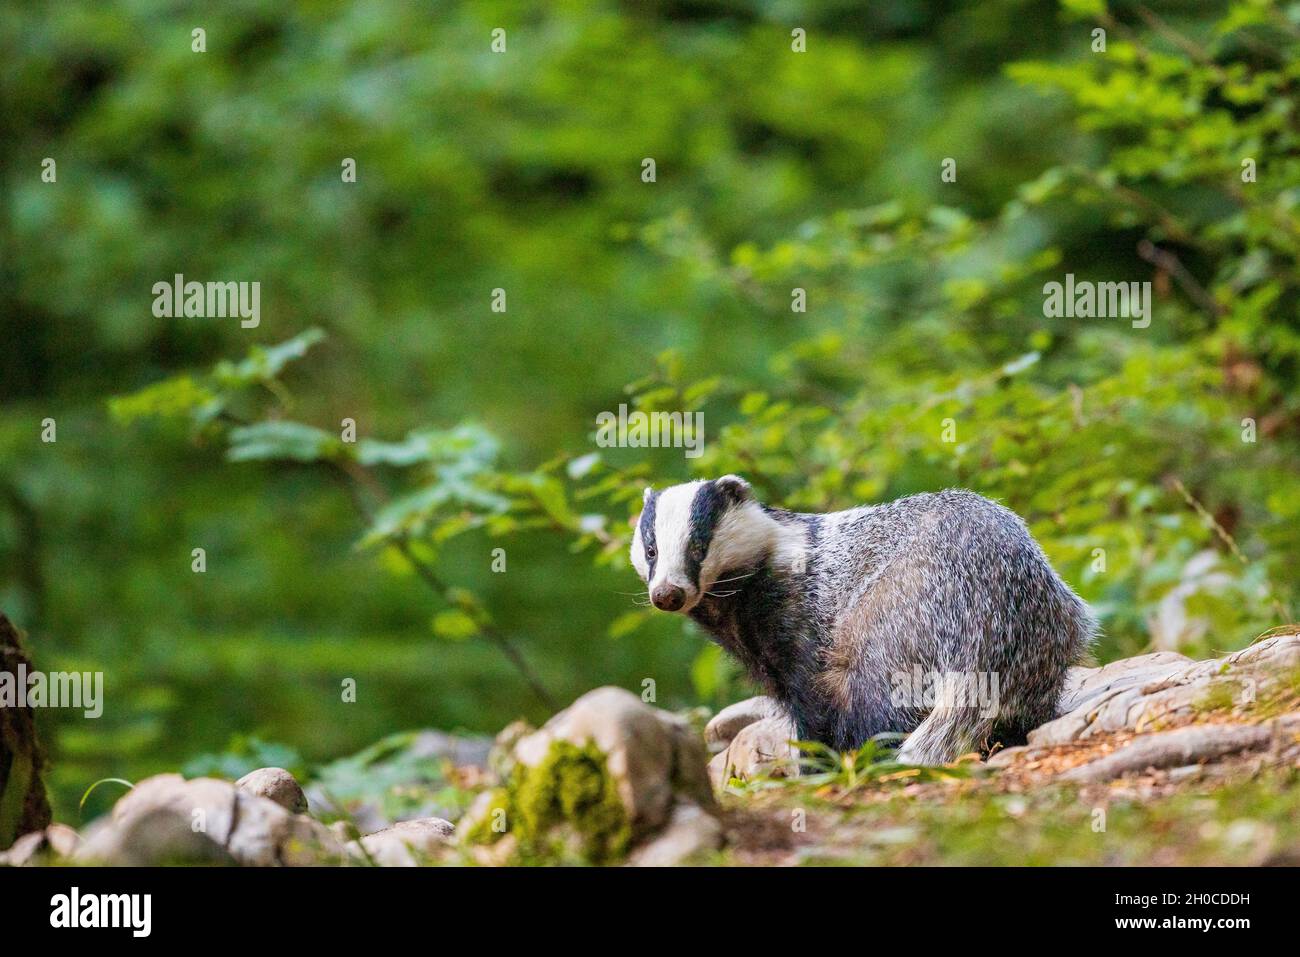 Eurasian badger (Meles meles) in forest, Slovenia Stock Photo